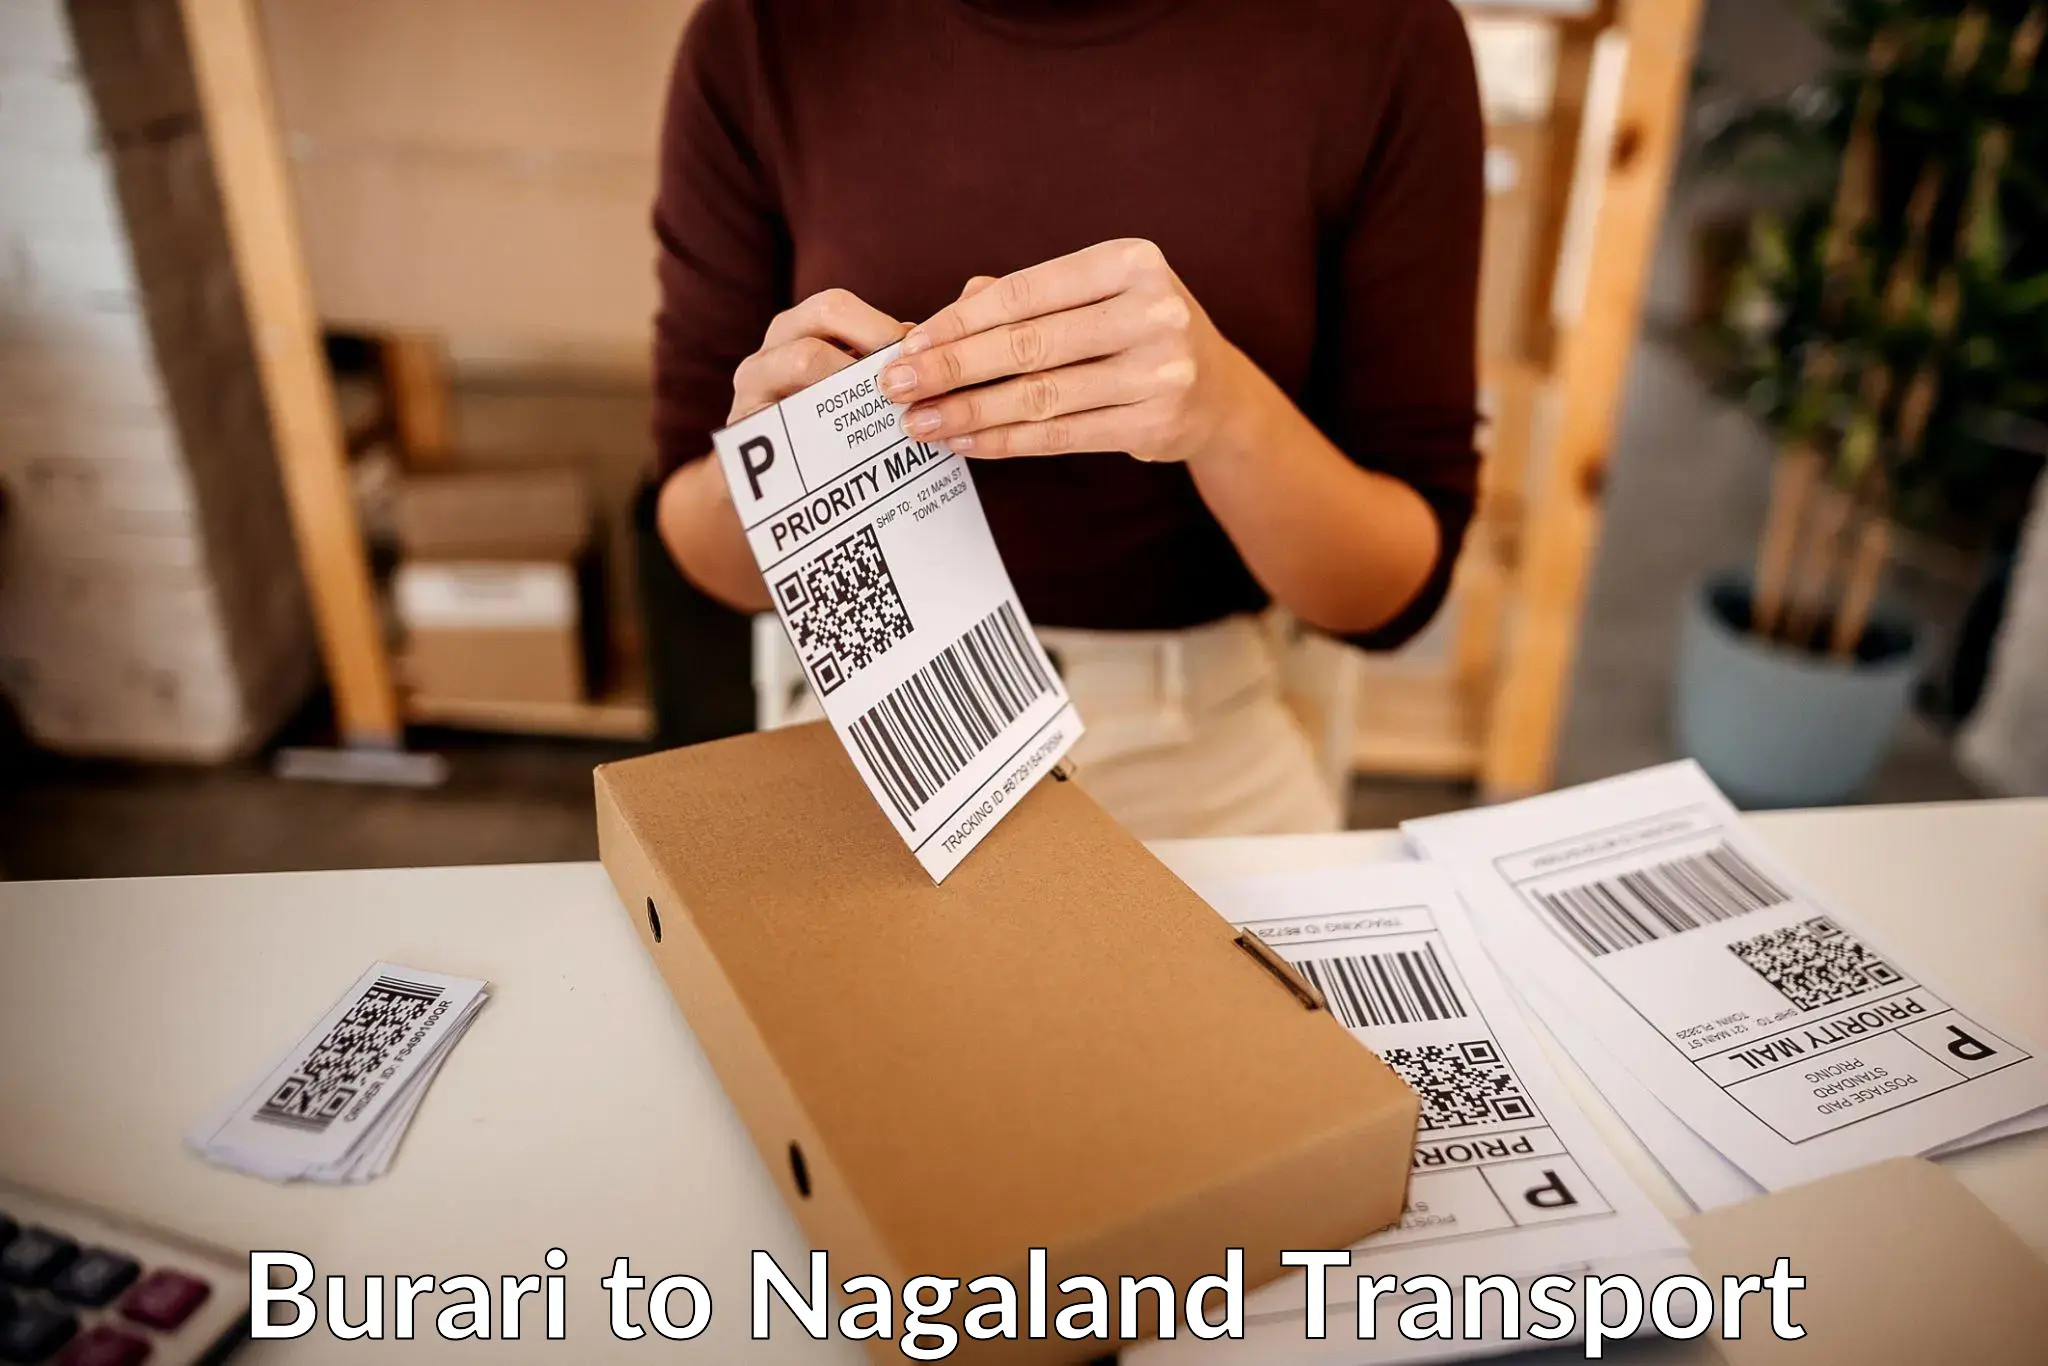 Air freight transport services Burari to NIT Nagaland